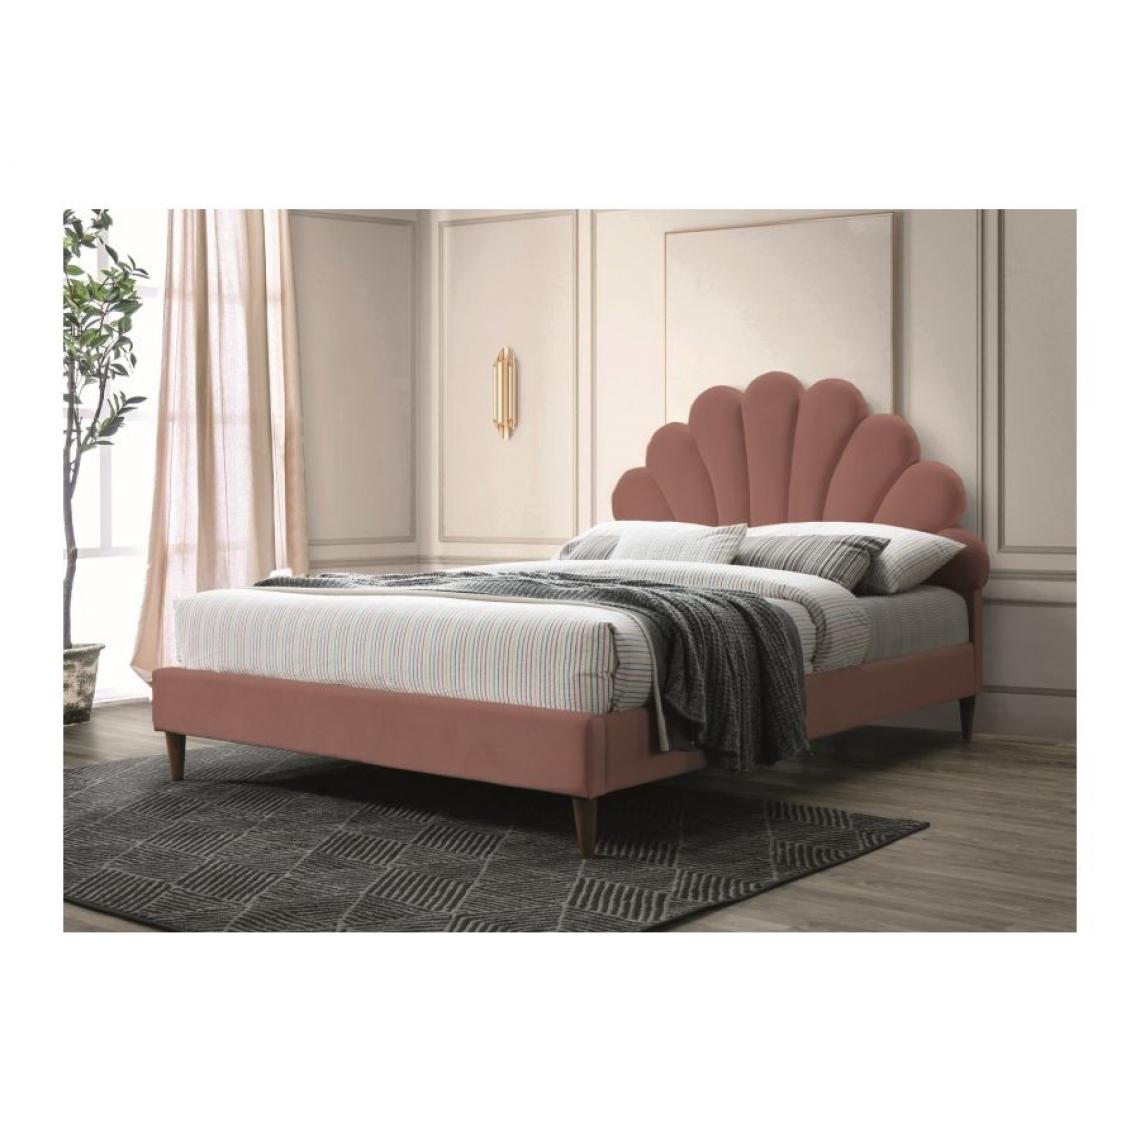 Hucoco - SANTYNA - Lit rembourré chambre à coucher - 170x211 cm - Rembourré de tissu - Pieds en bois - Tête forme coquille - Rose - Lit enfant